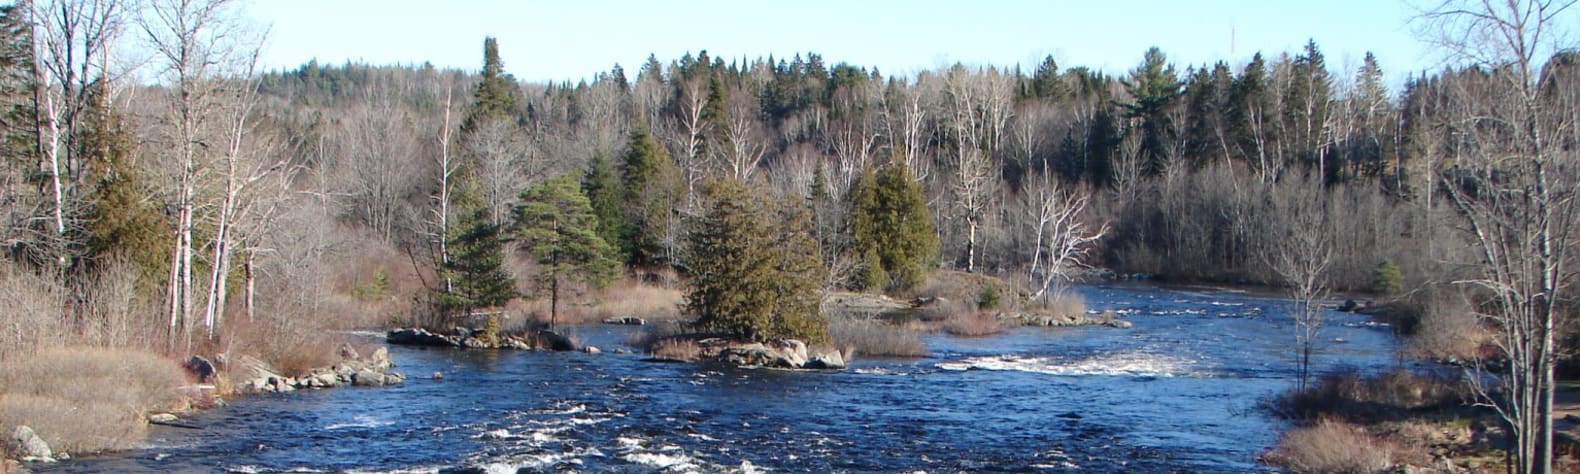 Upper Madawaska River Provincial Park